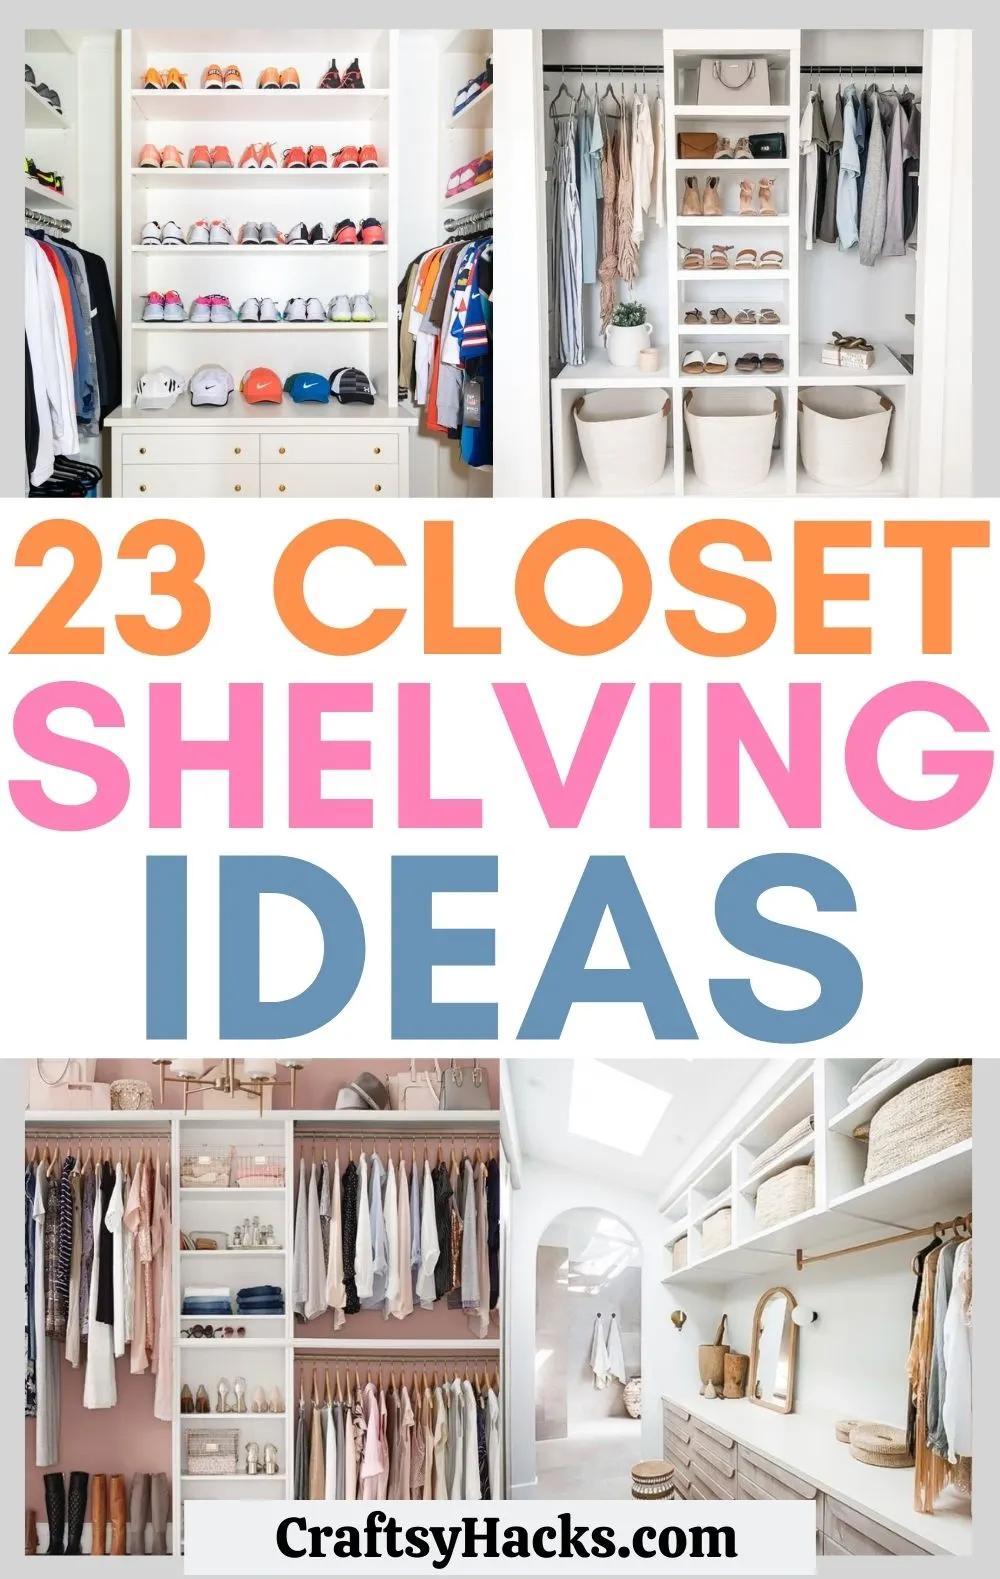 23 Closet Shelving Ideas To Up Your, Shelves Inside Closet